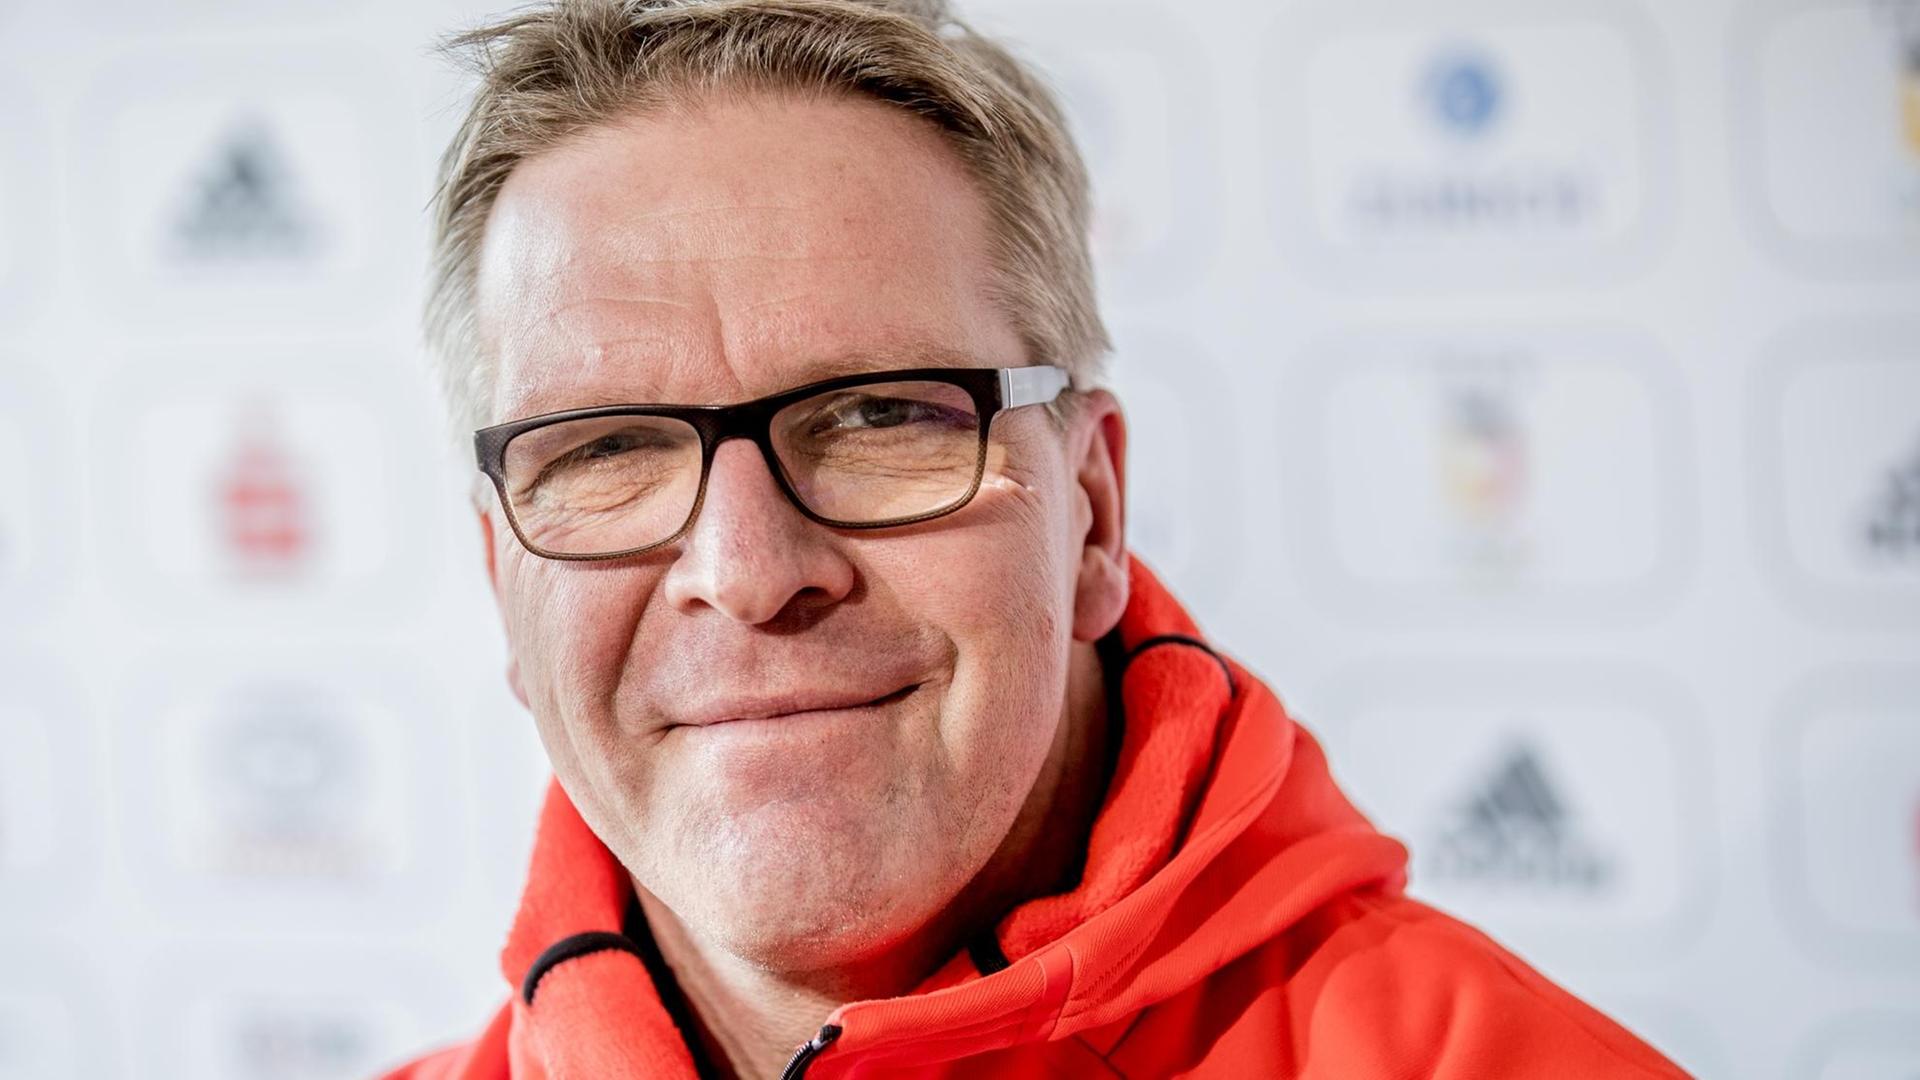 Dirk Schimmelpfennig, Chef de Mission vom Deutschen Olympischen Sportbund (DOSB) lächelt